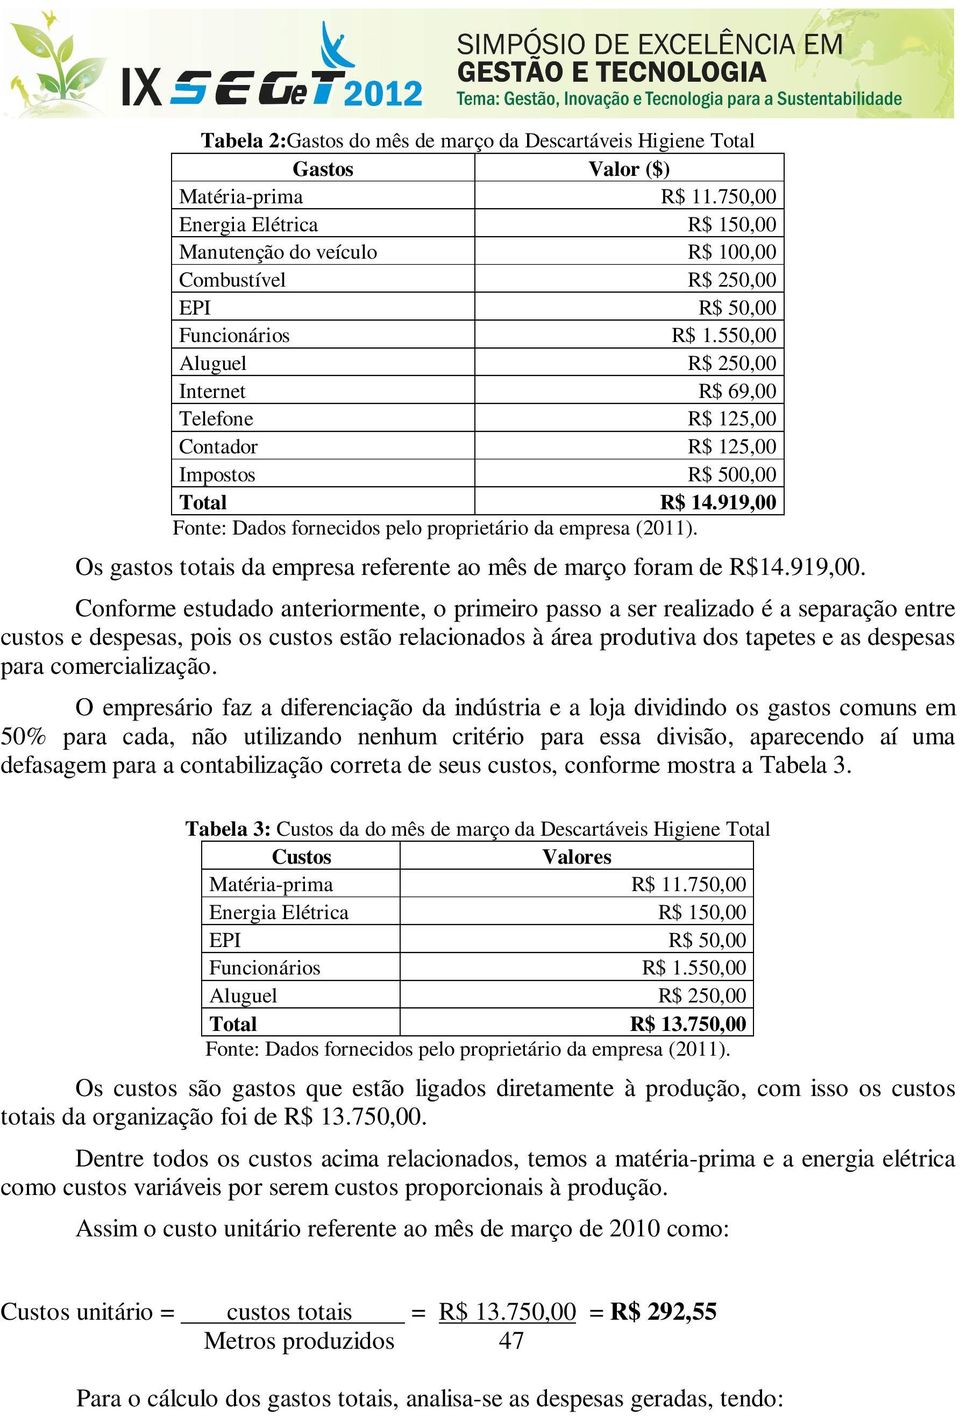 550,00 Aluguel R$ 250,00 Internet R$ 69,00 Telefone R$ 125,00 Contador R$ 125,00 Impostos R$ 500,00 Total R$ 14.919,00 Fonte: Dados fornecidos pelo proprietário da empresa (2011).